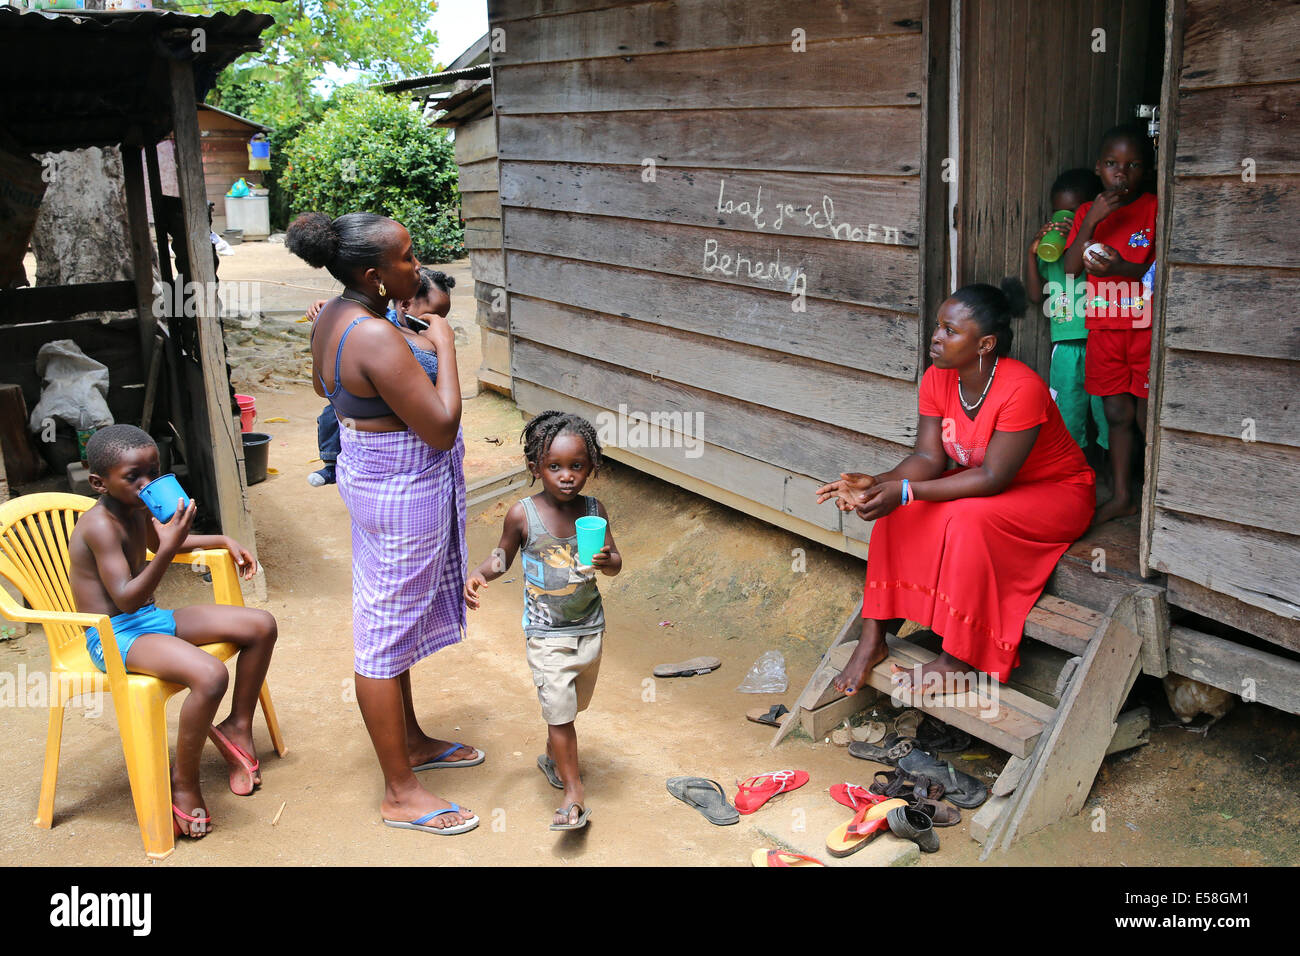 Les femmes et les enfants dans un village pauvre de la tribu des marrons dans le parc national du Brownsberg au Suriname, l'Amérique latine Banque D'Images